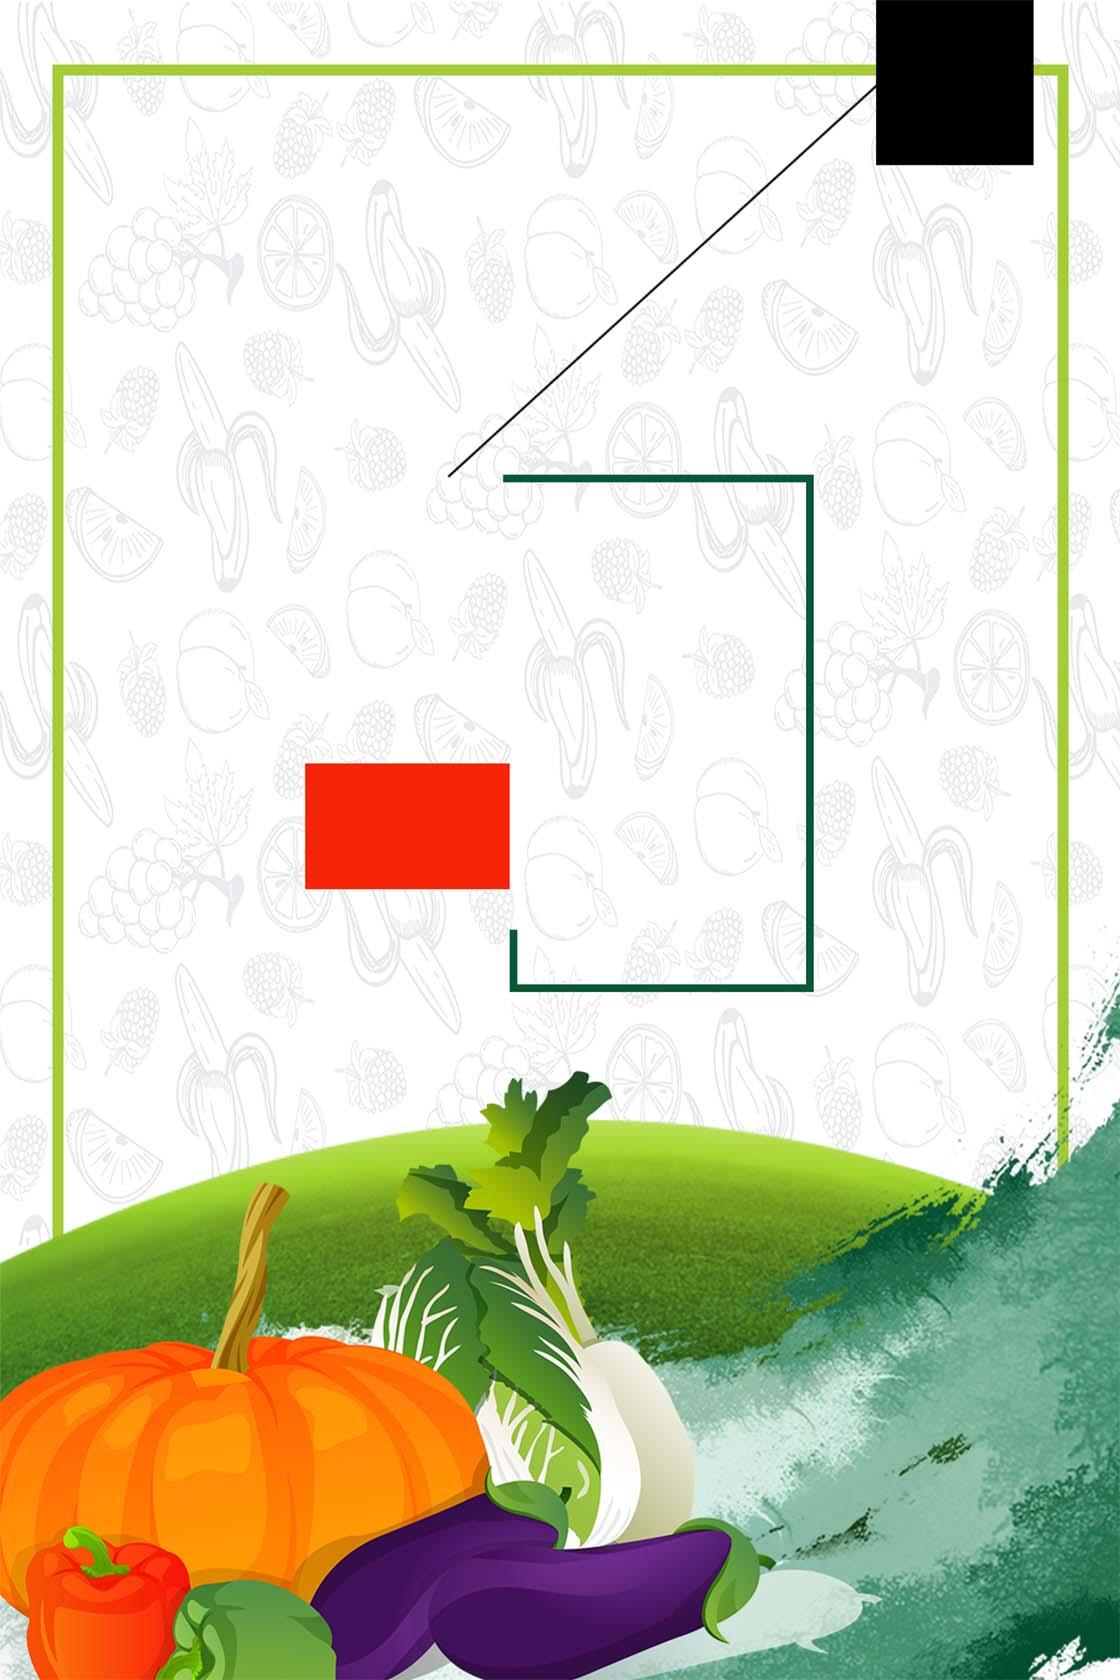 简洁绿色底食物食品安全宣传海报背景